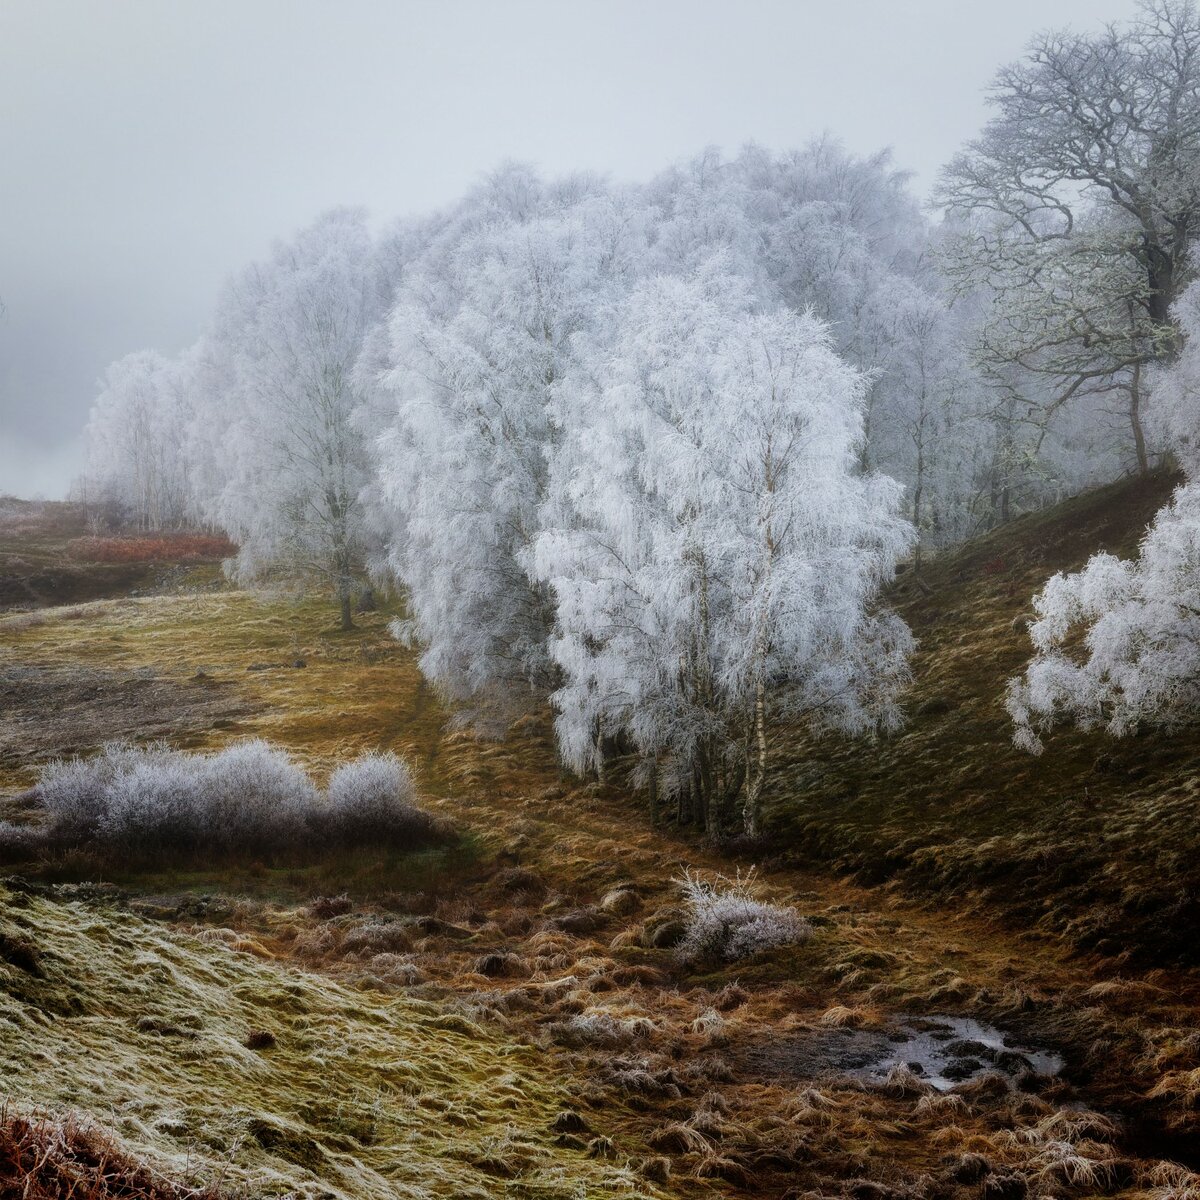 © Tim Hodges (Великобритания) «Морозная дорожка».
Шорт-лист в категории «Пейзаж» | Sony World Photography Awards 2022